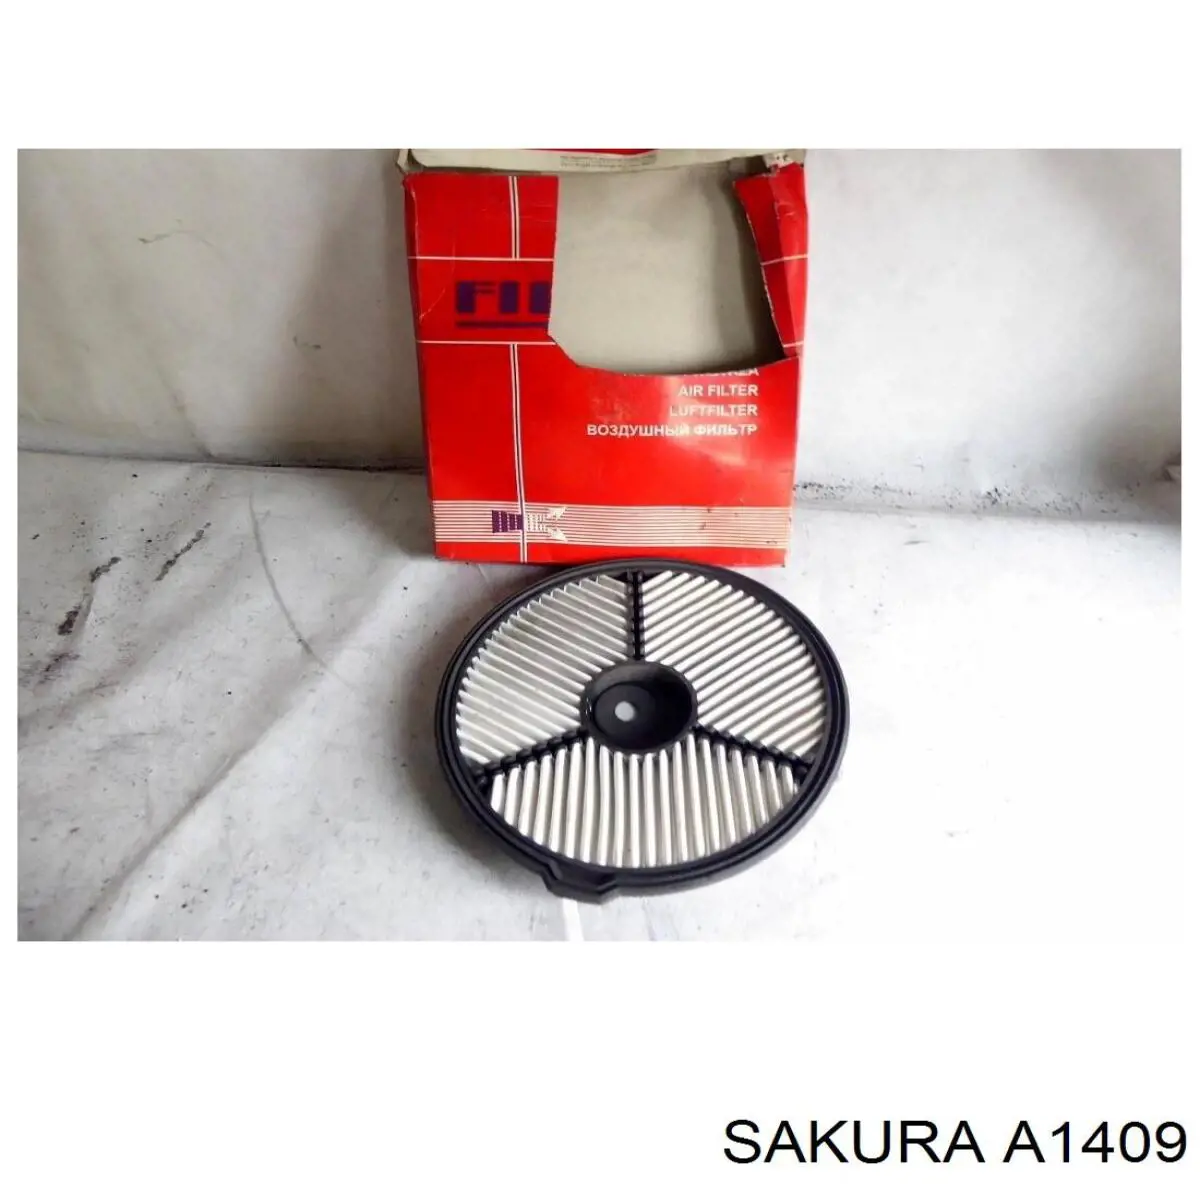 A-1409 Sakura filtro de aire